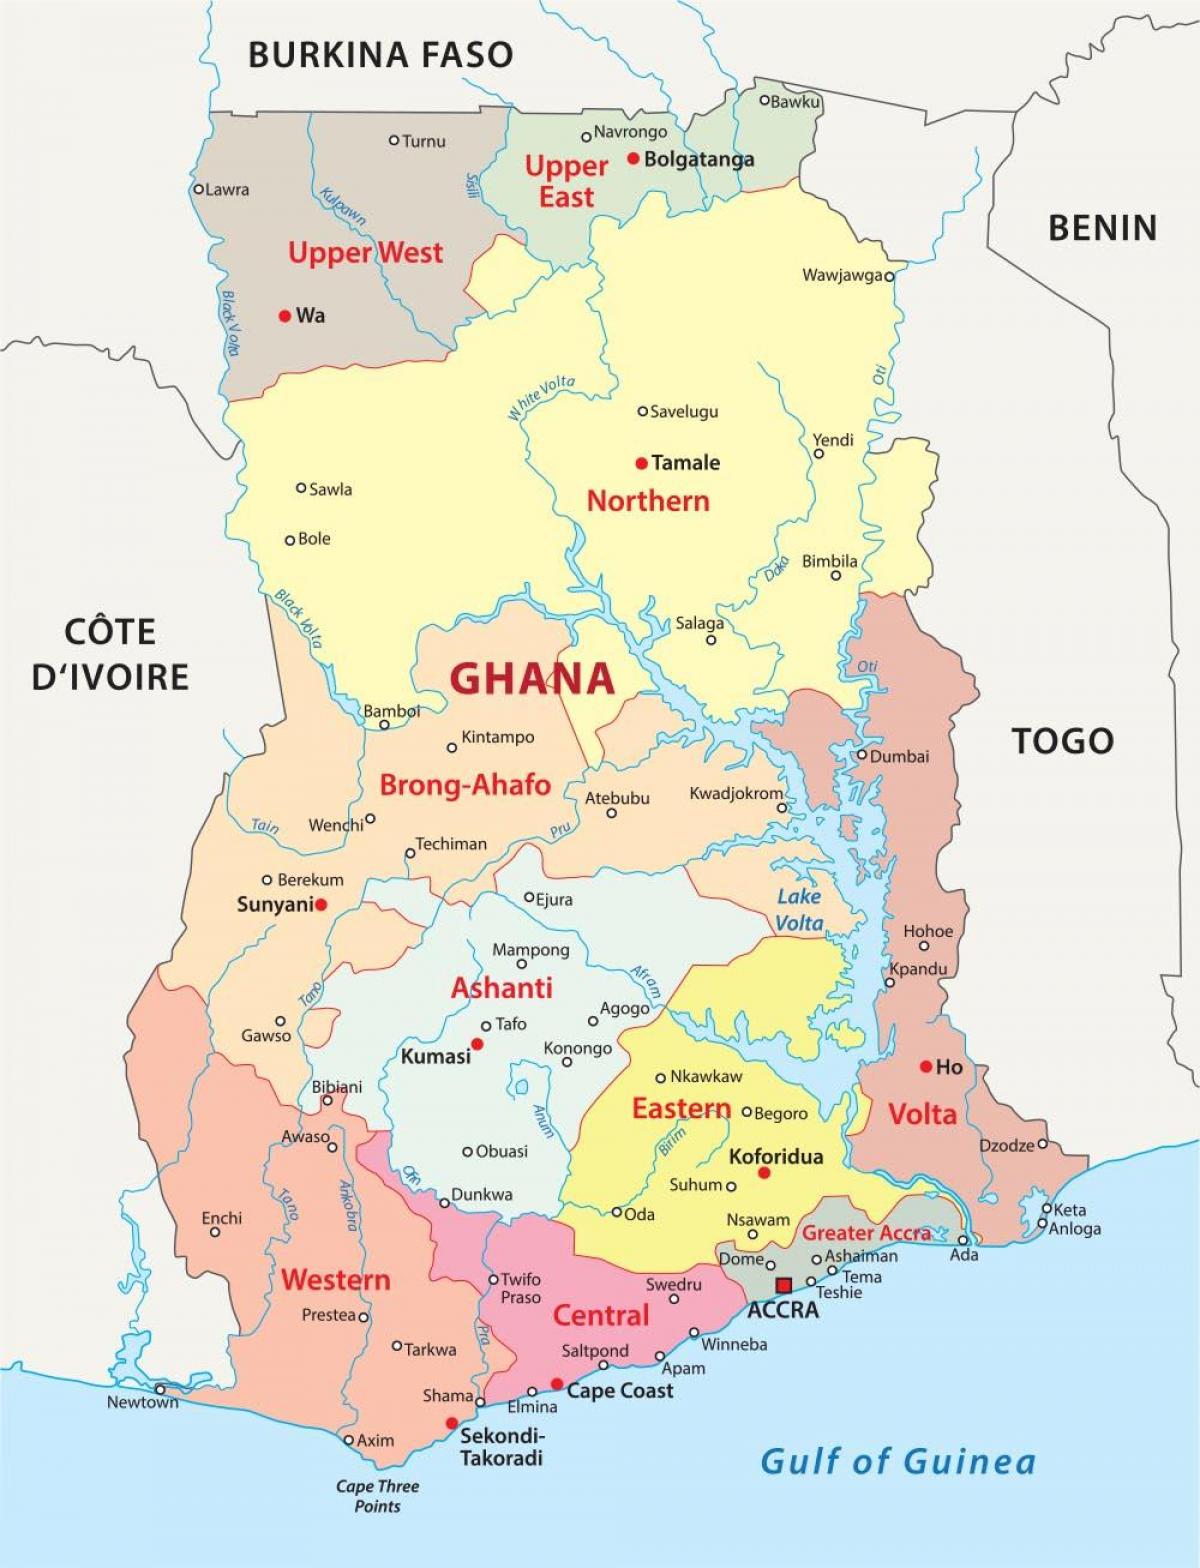 नक्शे के घाना दिखा जिलों